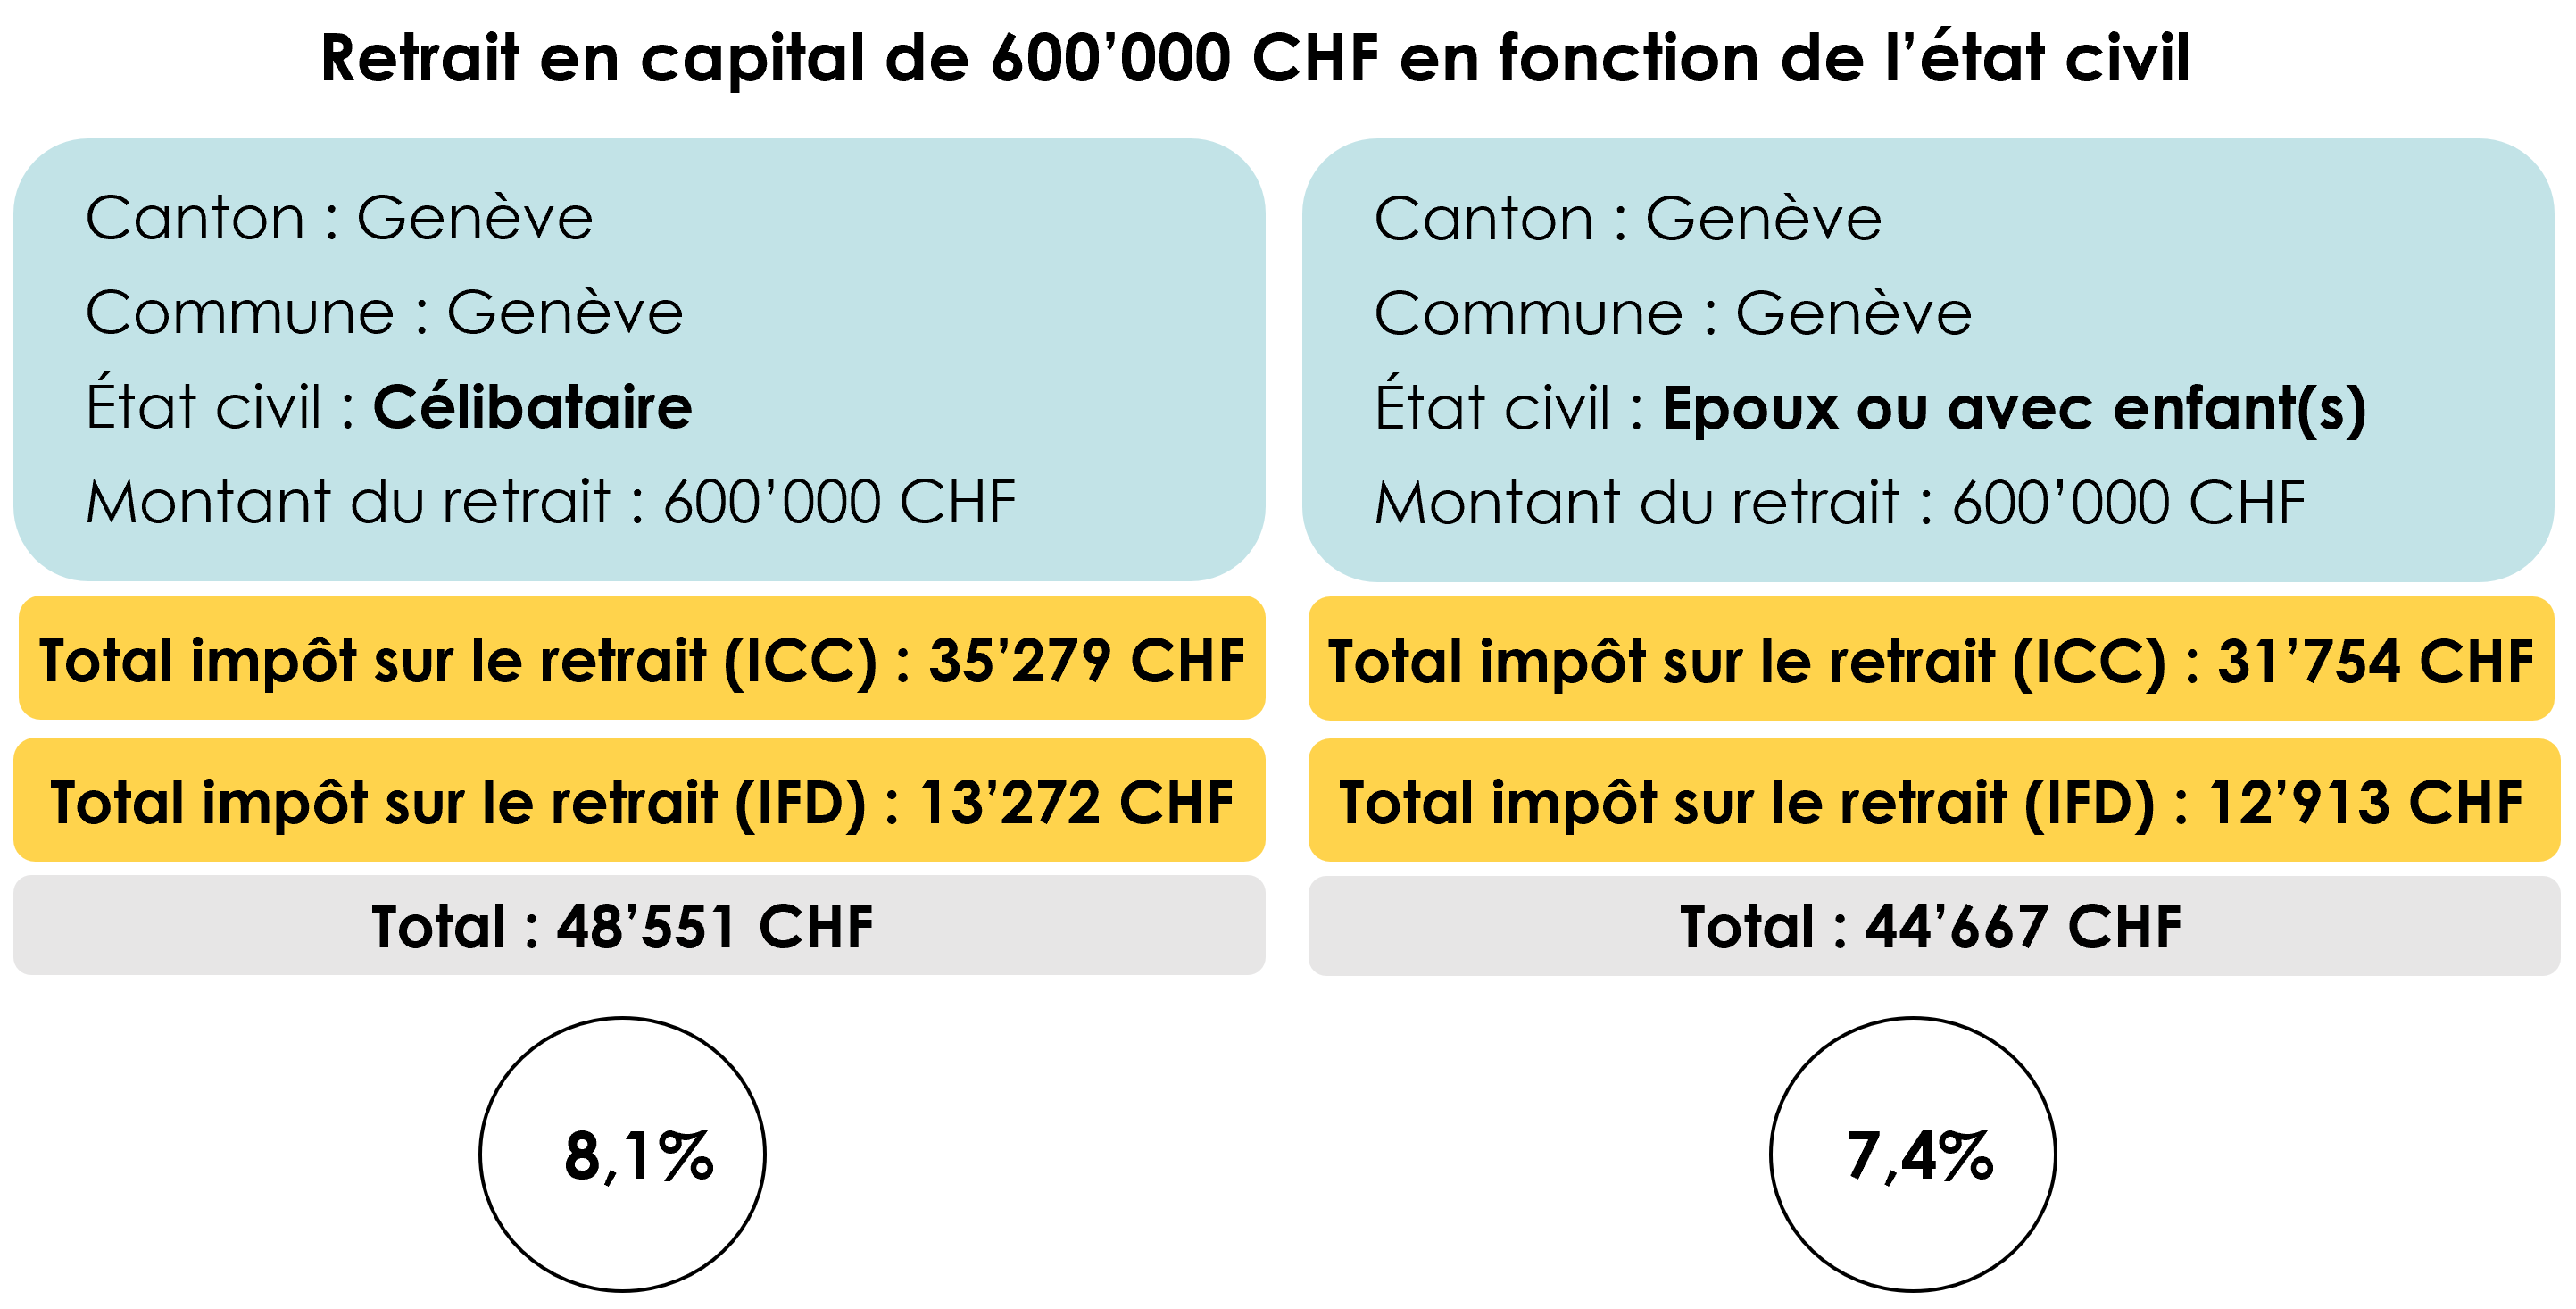 Exemple de calcul de l’impôt sur le retrait en capital du 2ème pilier d’un montant de 600’000 CHF